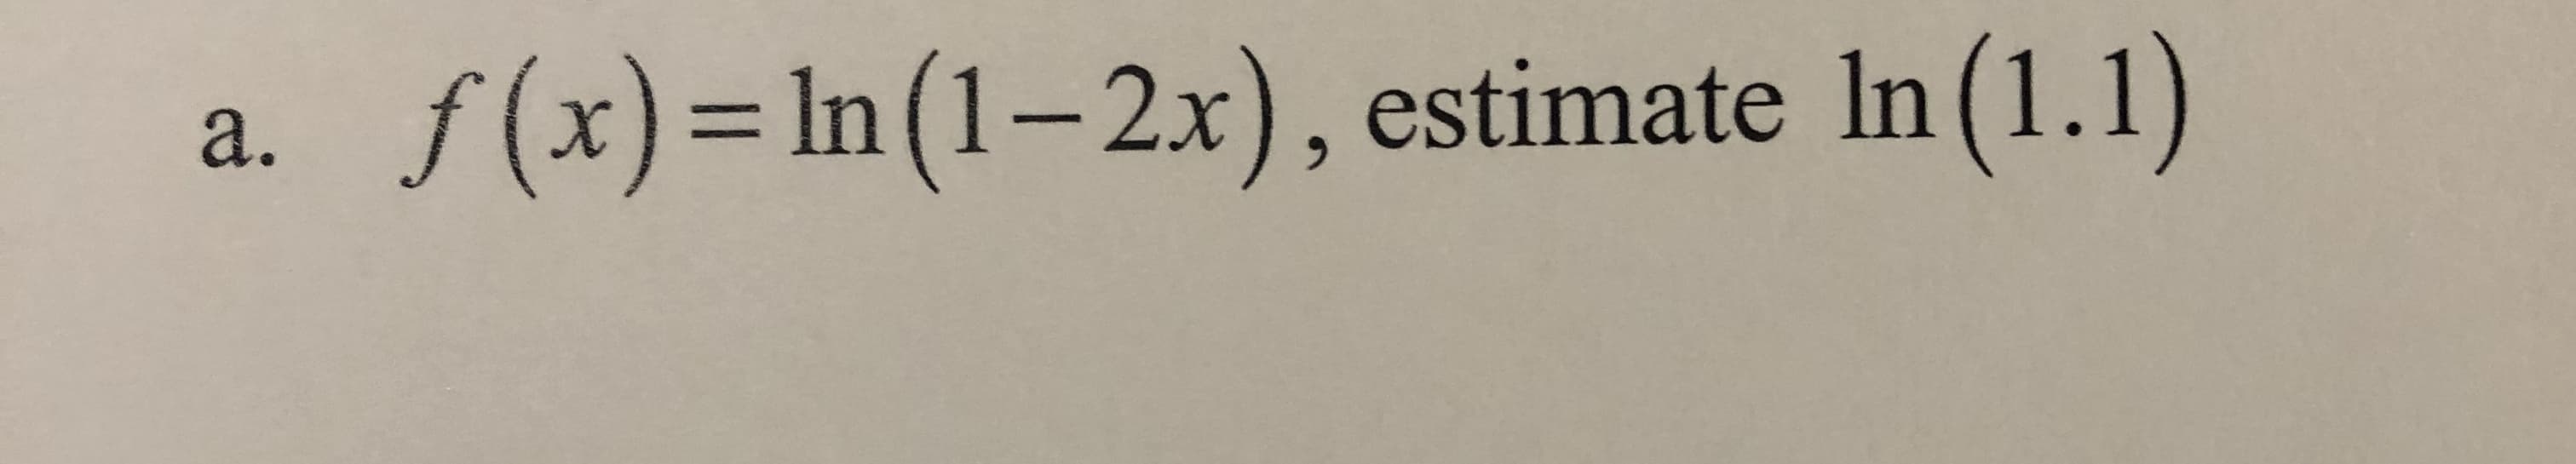 f(x) = In (1 - 2x), estimate In (1.1)
a.
